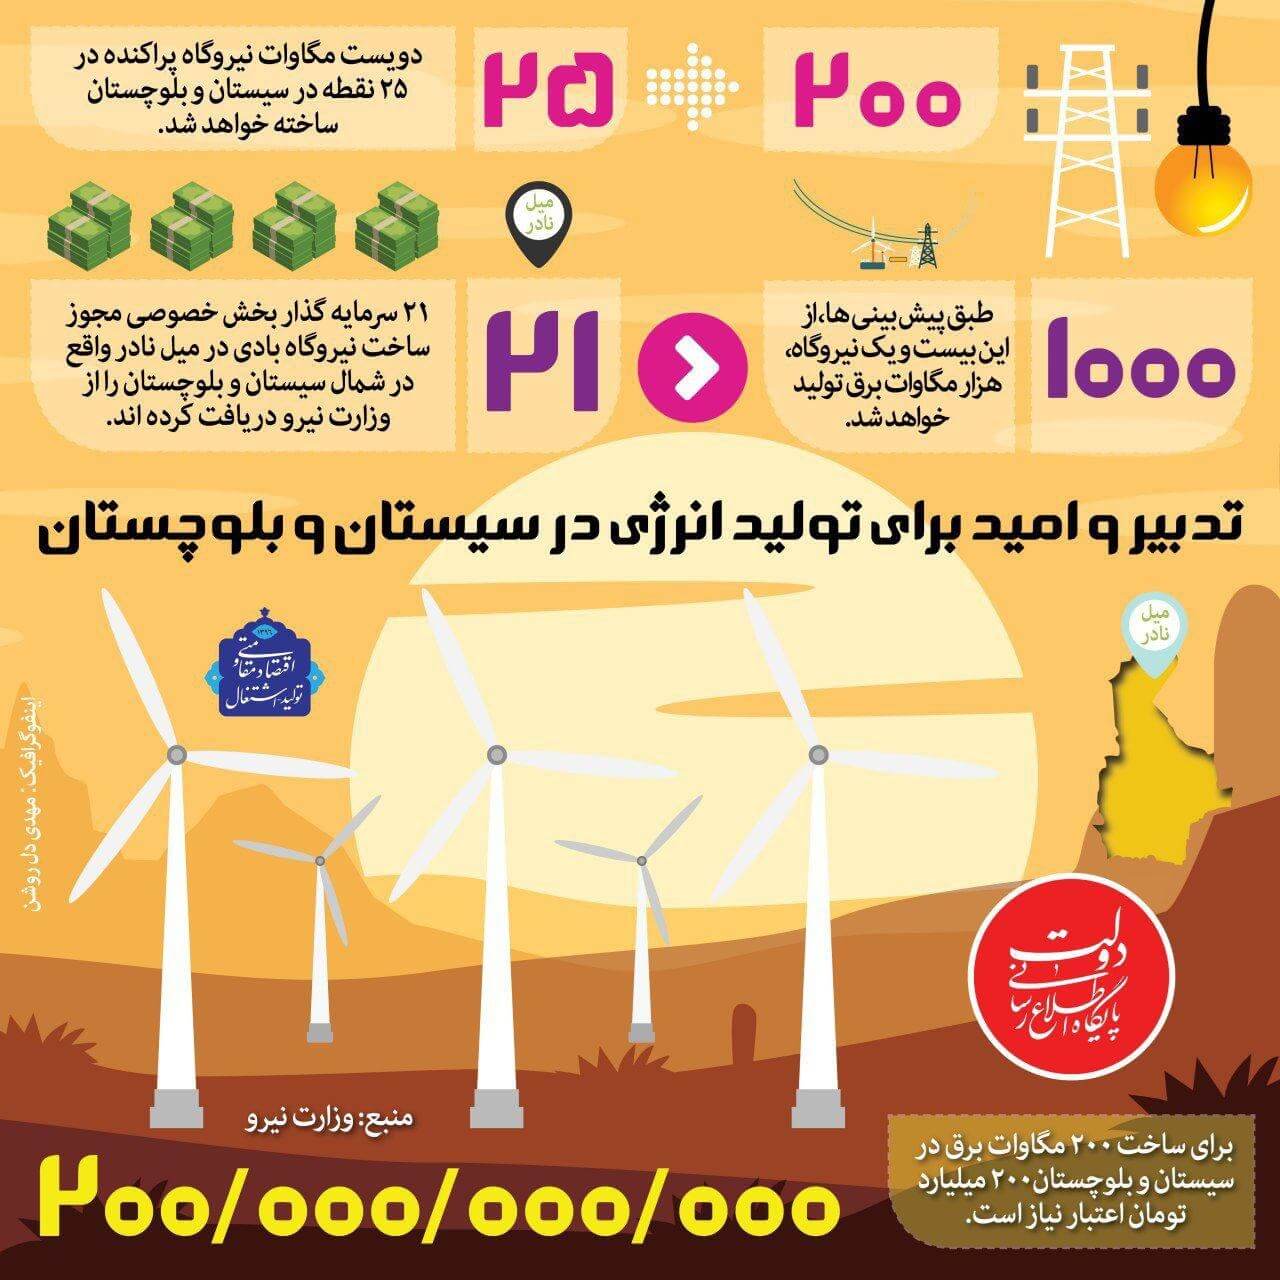 اینفوگرافیک  تولید انرژی بادی در سیستان و بلوچستان